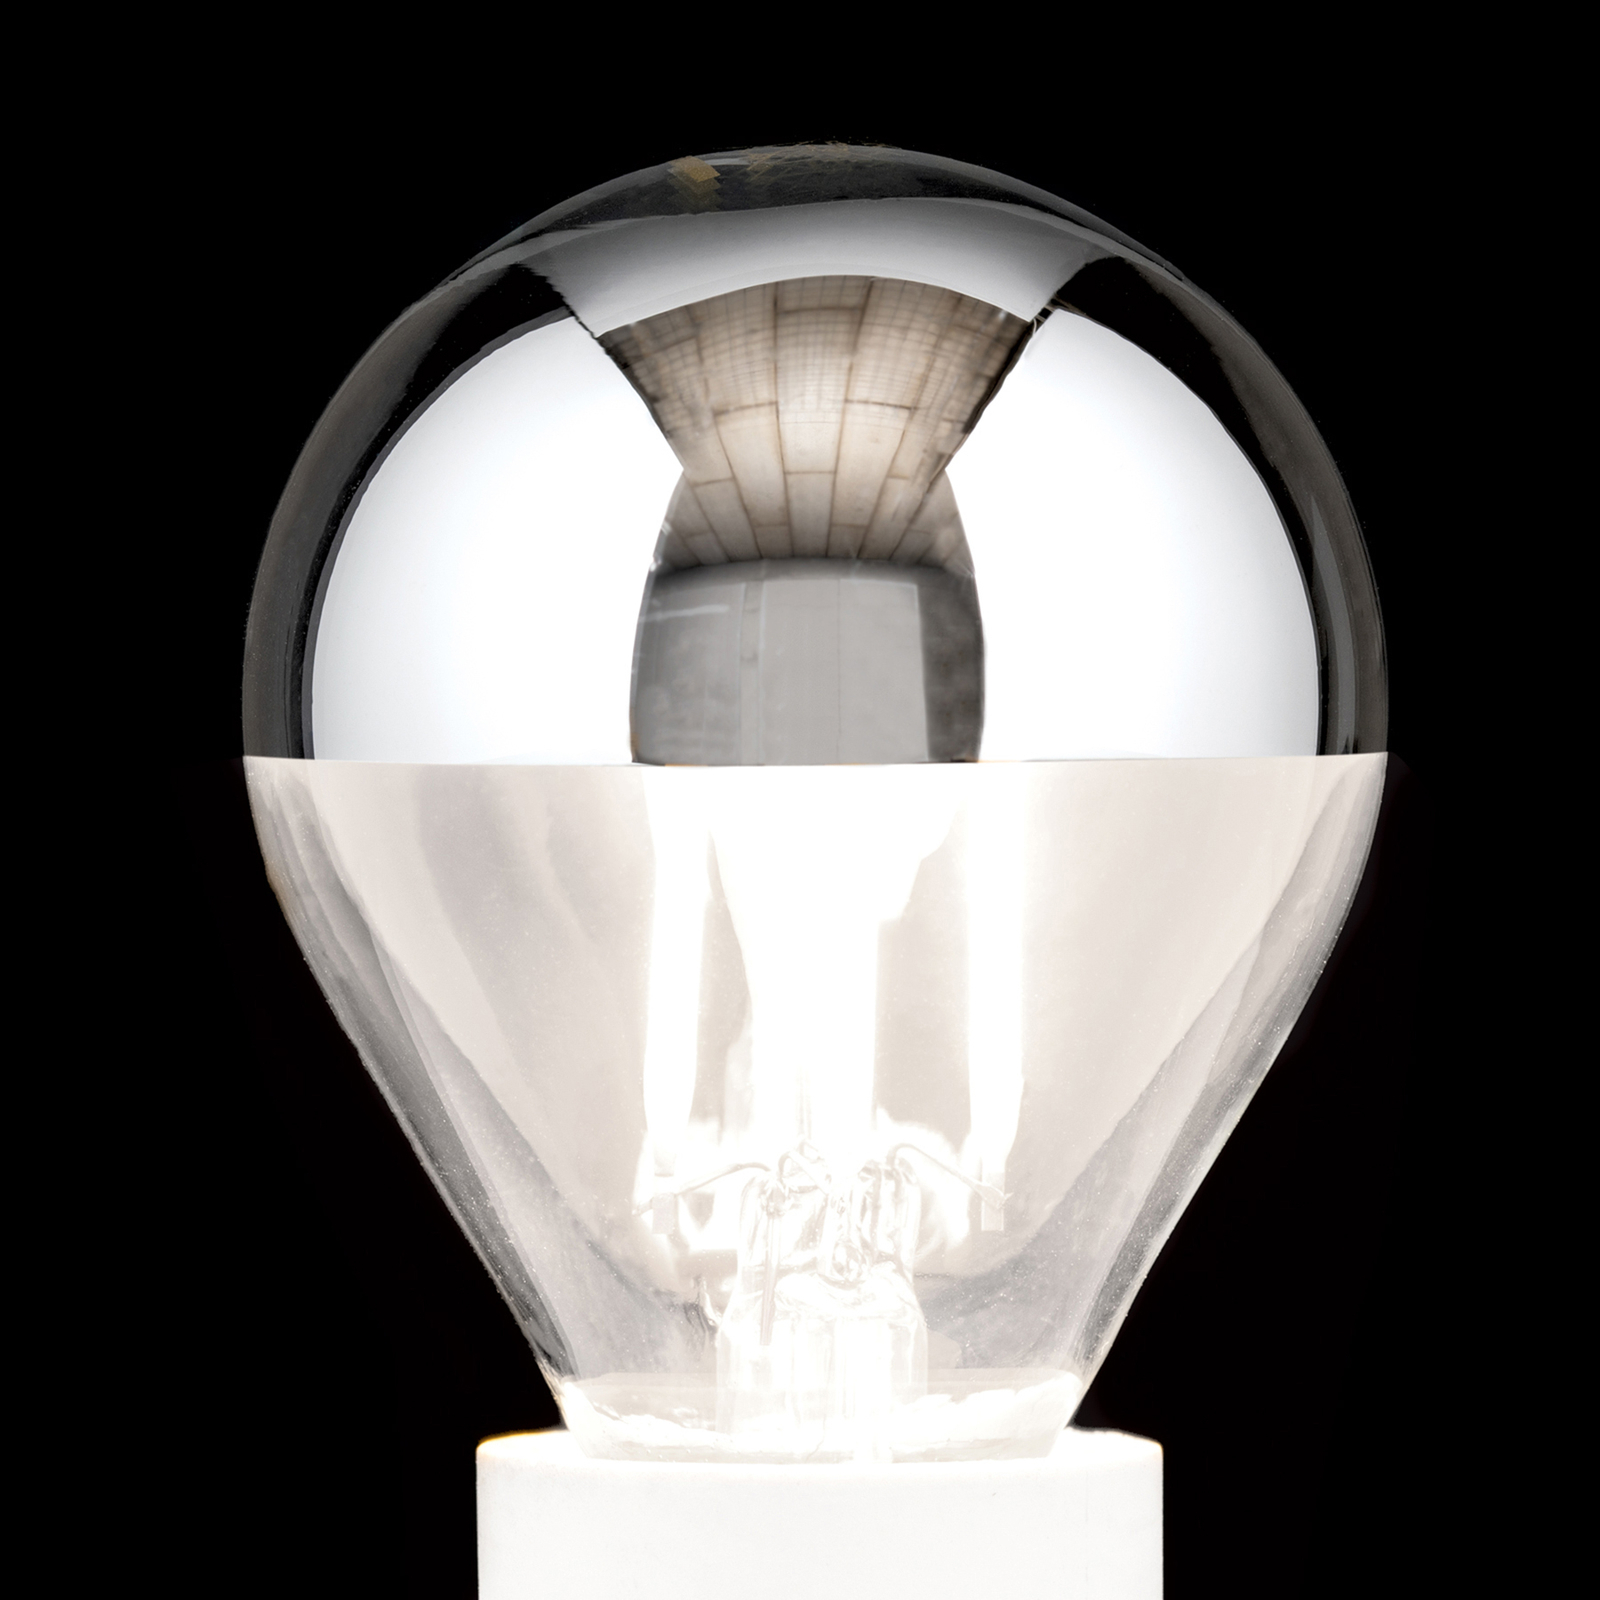 LED zrkadlová E14 4W, teplá biela, stmievateľná